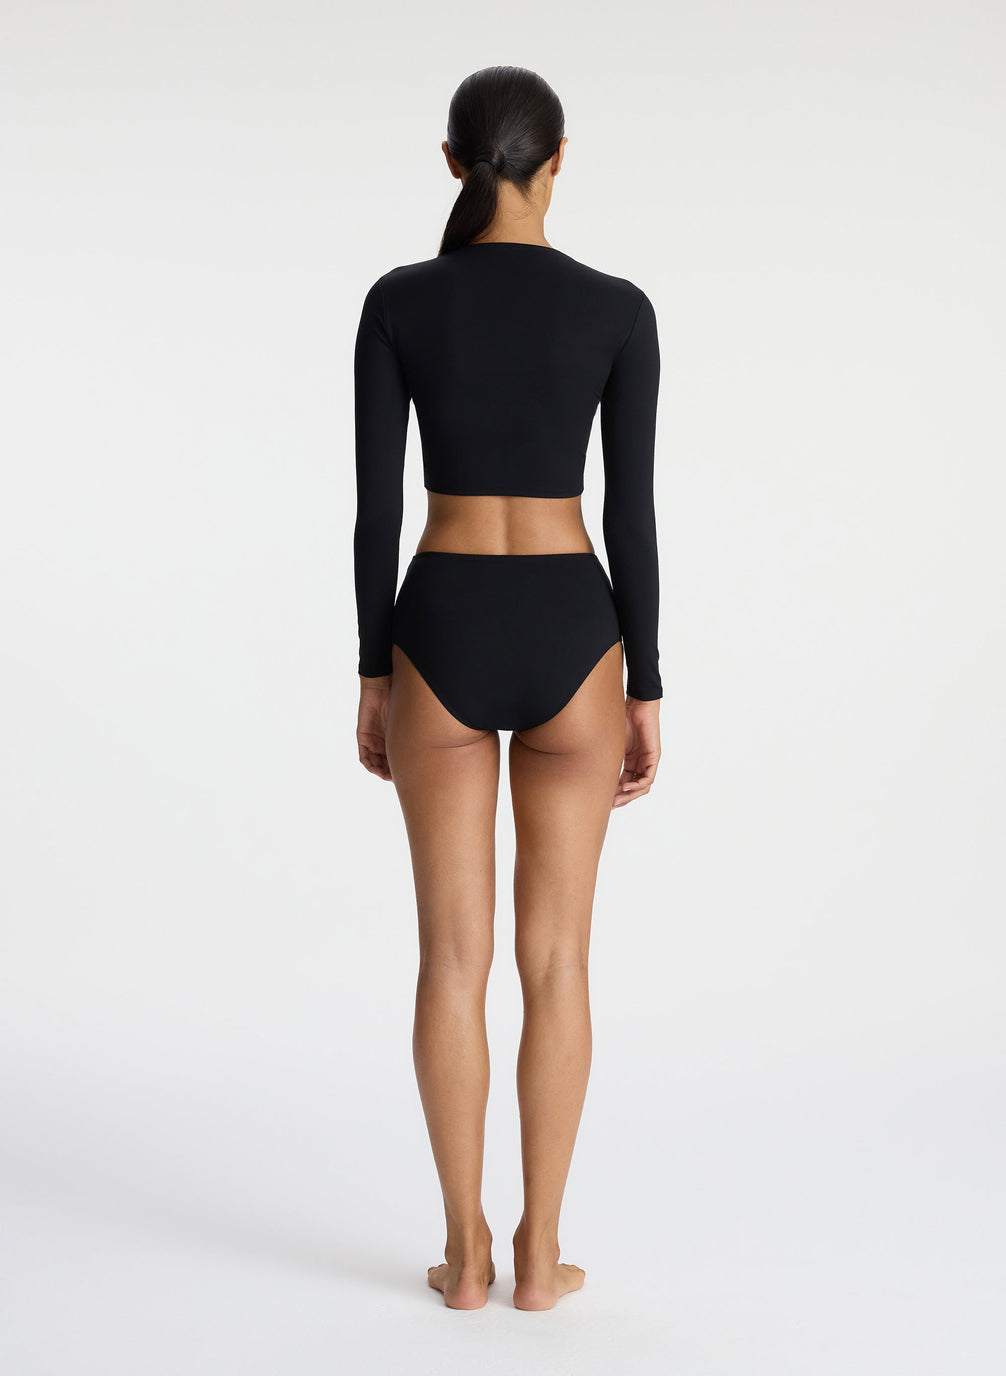 back view of woman in black long sleeve ruched rashguard and black bikini bottom